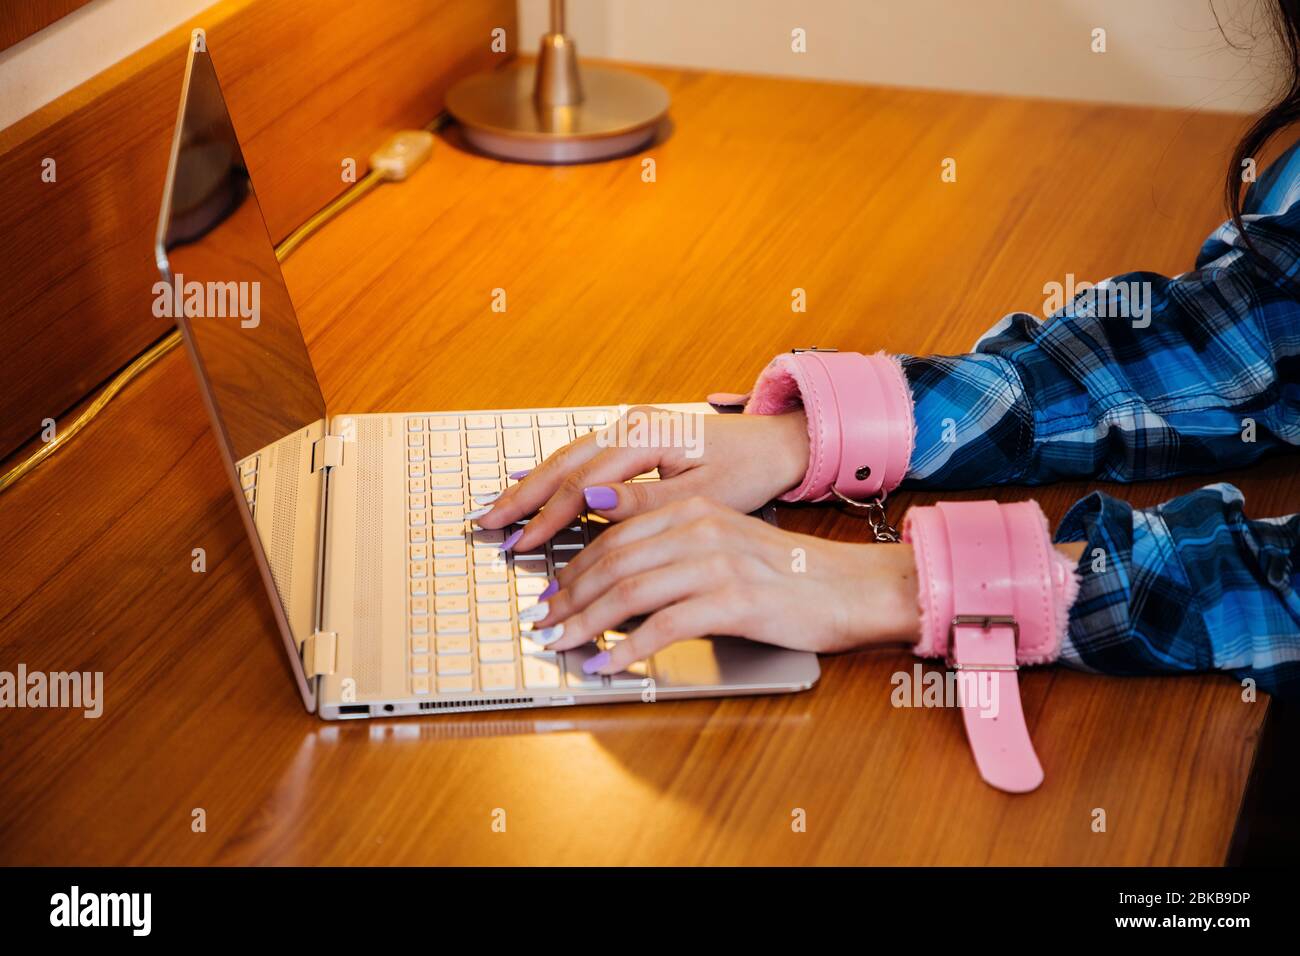 Les mains en rose menottes sont dactylographiés sur le clavier d'un ordinateur portable mince; symbolique pour être coincé à l'ordinateur pendant la quarantaine ou le stress ou la dépendance Banque D'Images